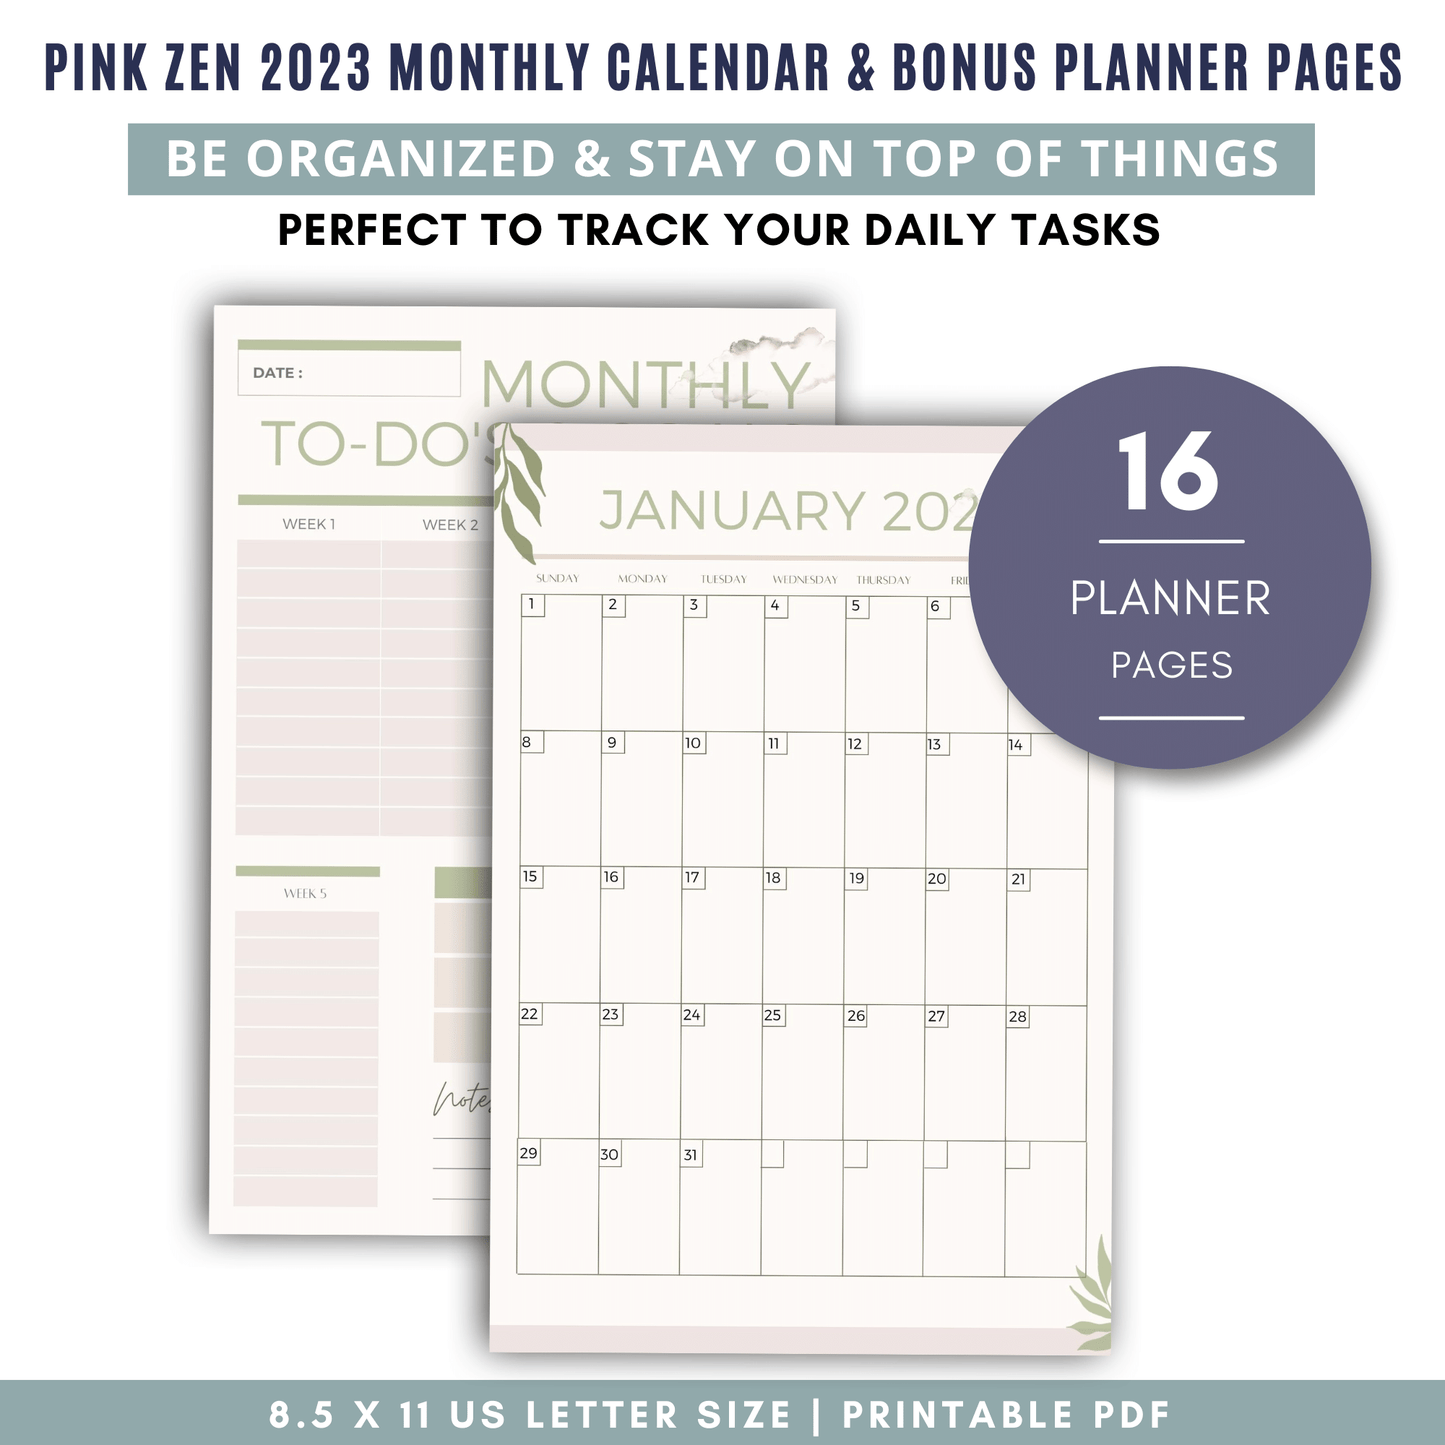 Pink Zen 2023 Monthly Calendar & Bonus Planner Pages [4]